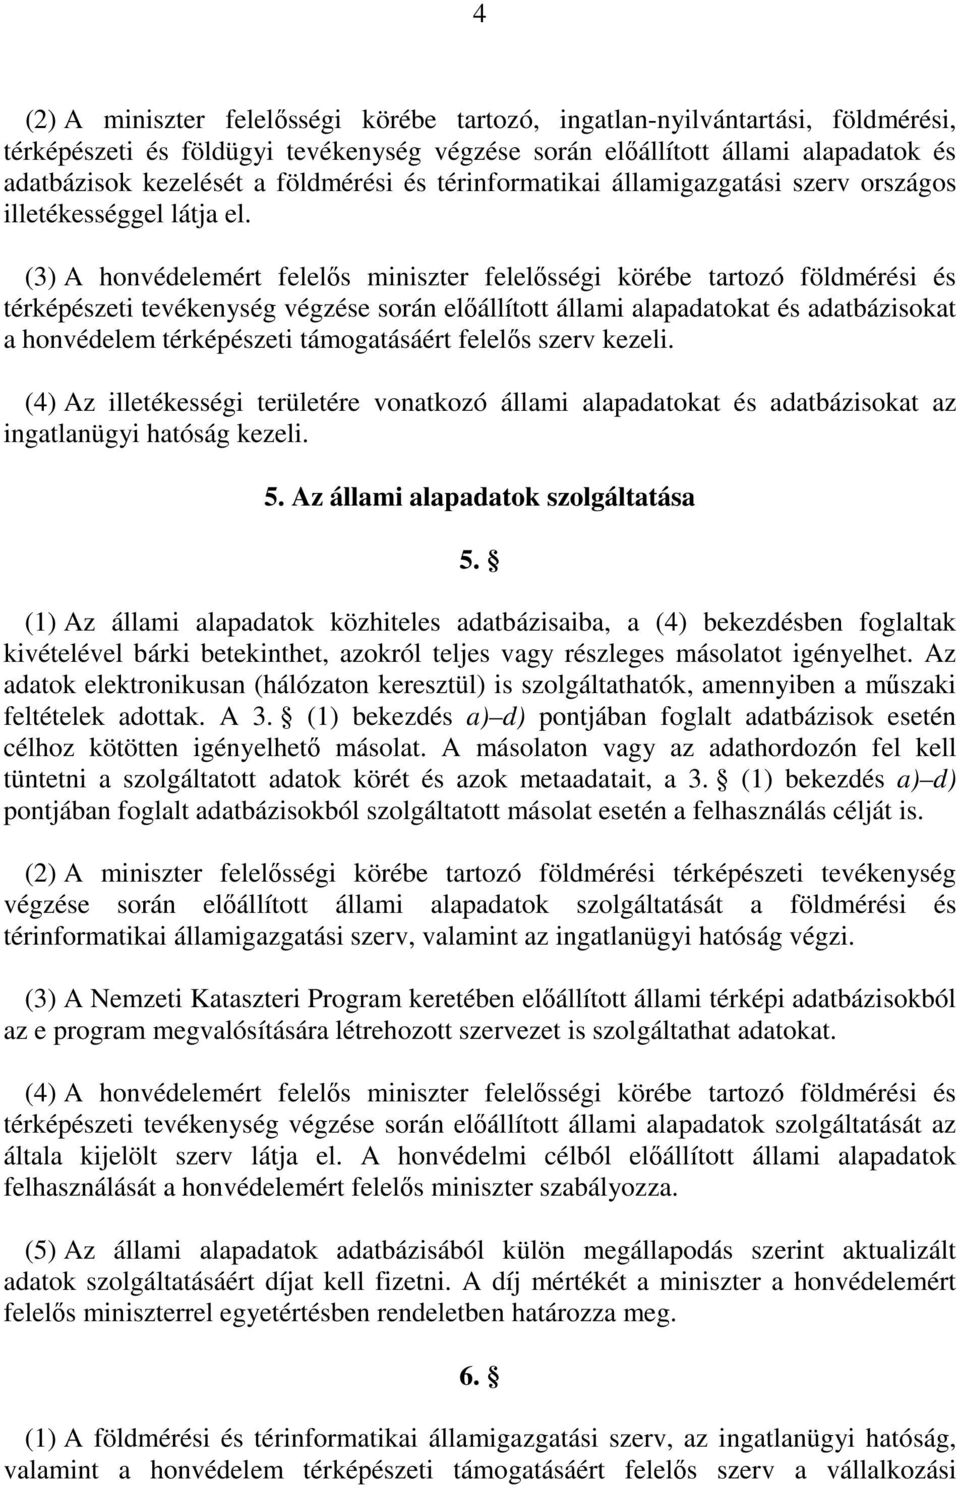 (3) A honvédelemért felelıs miniszter felelısségi körébe tartozó földmérési és térképészeti tevékenység végzése során elıállított állami alapadatokat és adatbázisokat a honvédelem térképészeti